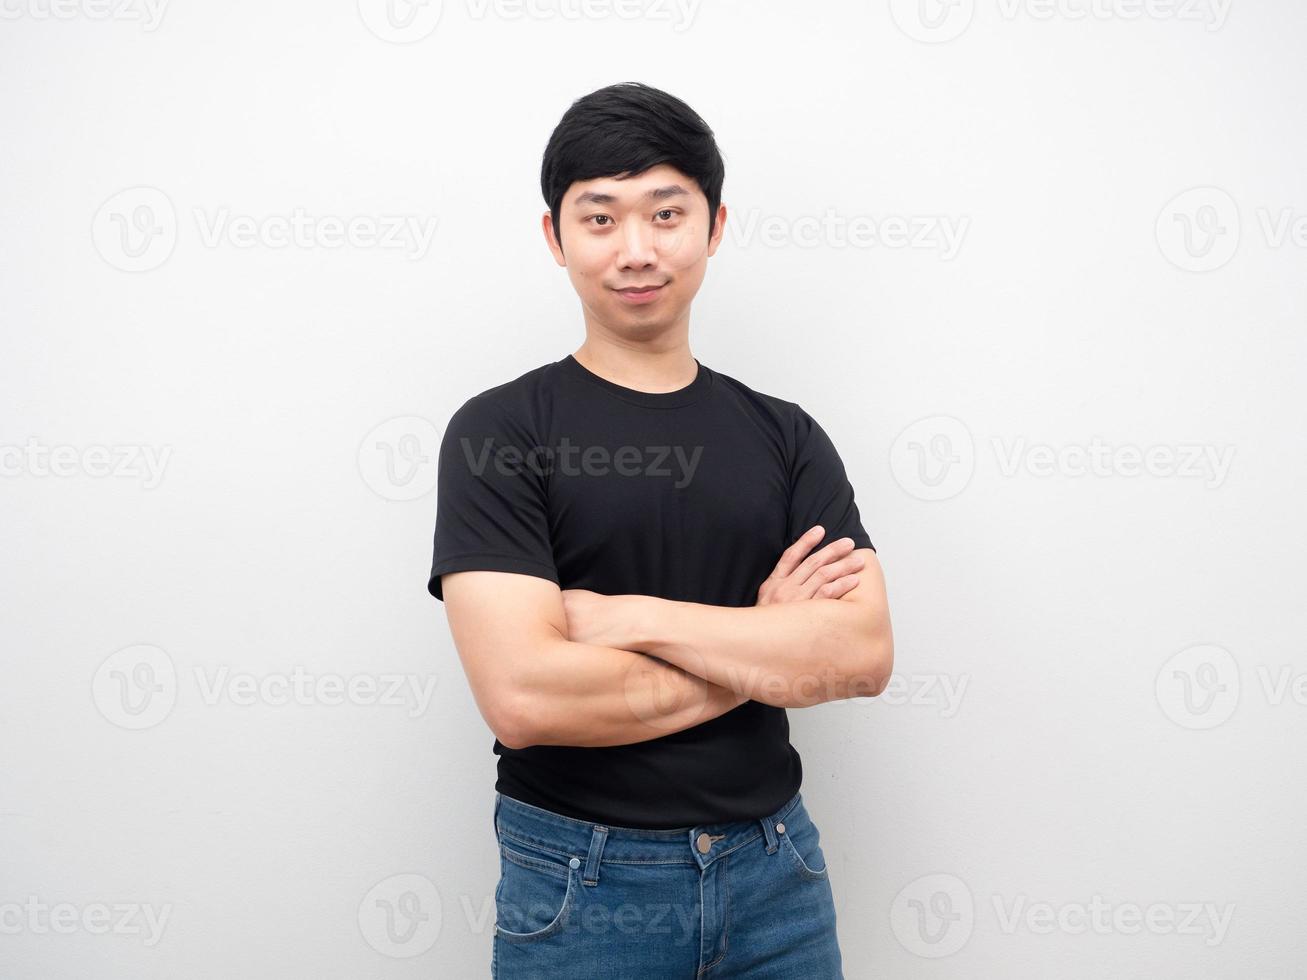 camisa negra de hombre asiático y jeans cruzan el brazo con retrato de sonrisa foto